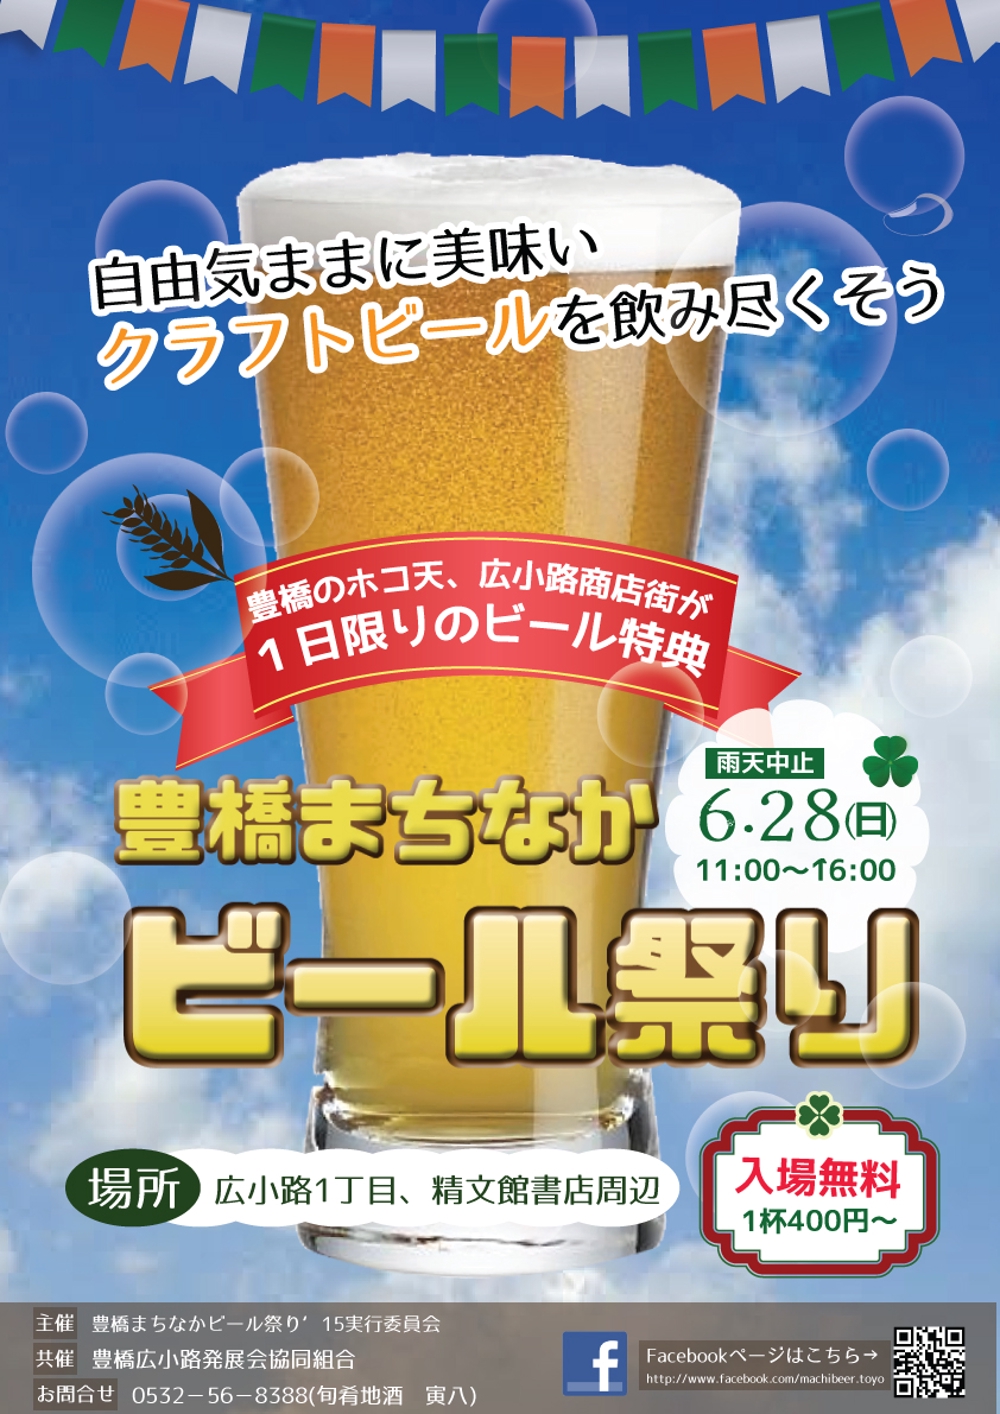 歩行者天国でのイベント、「豊橋まちなかビール祭り‘15」のポスター（チラシ）